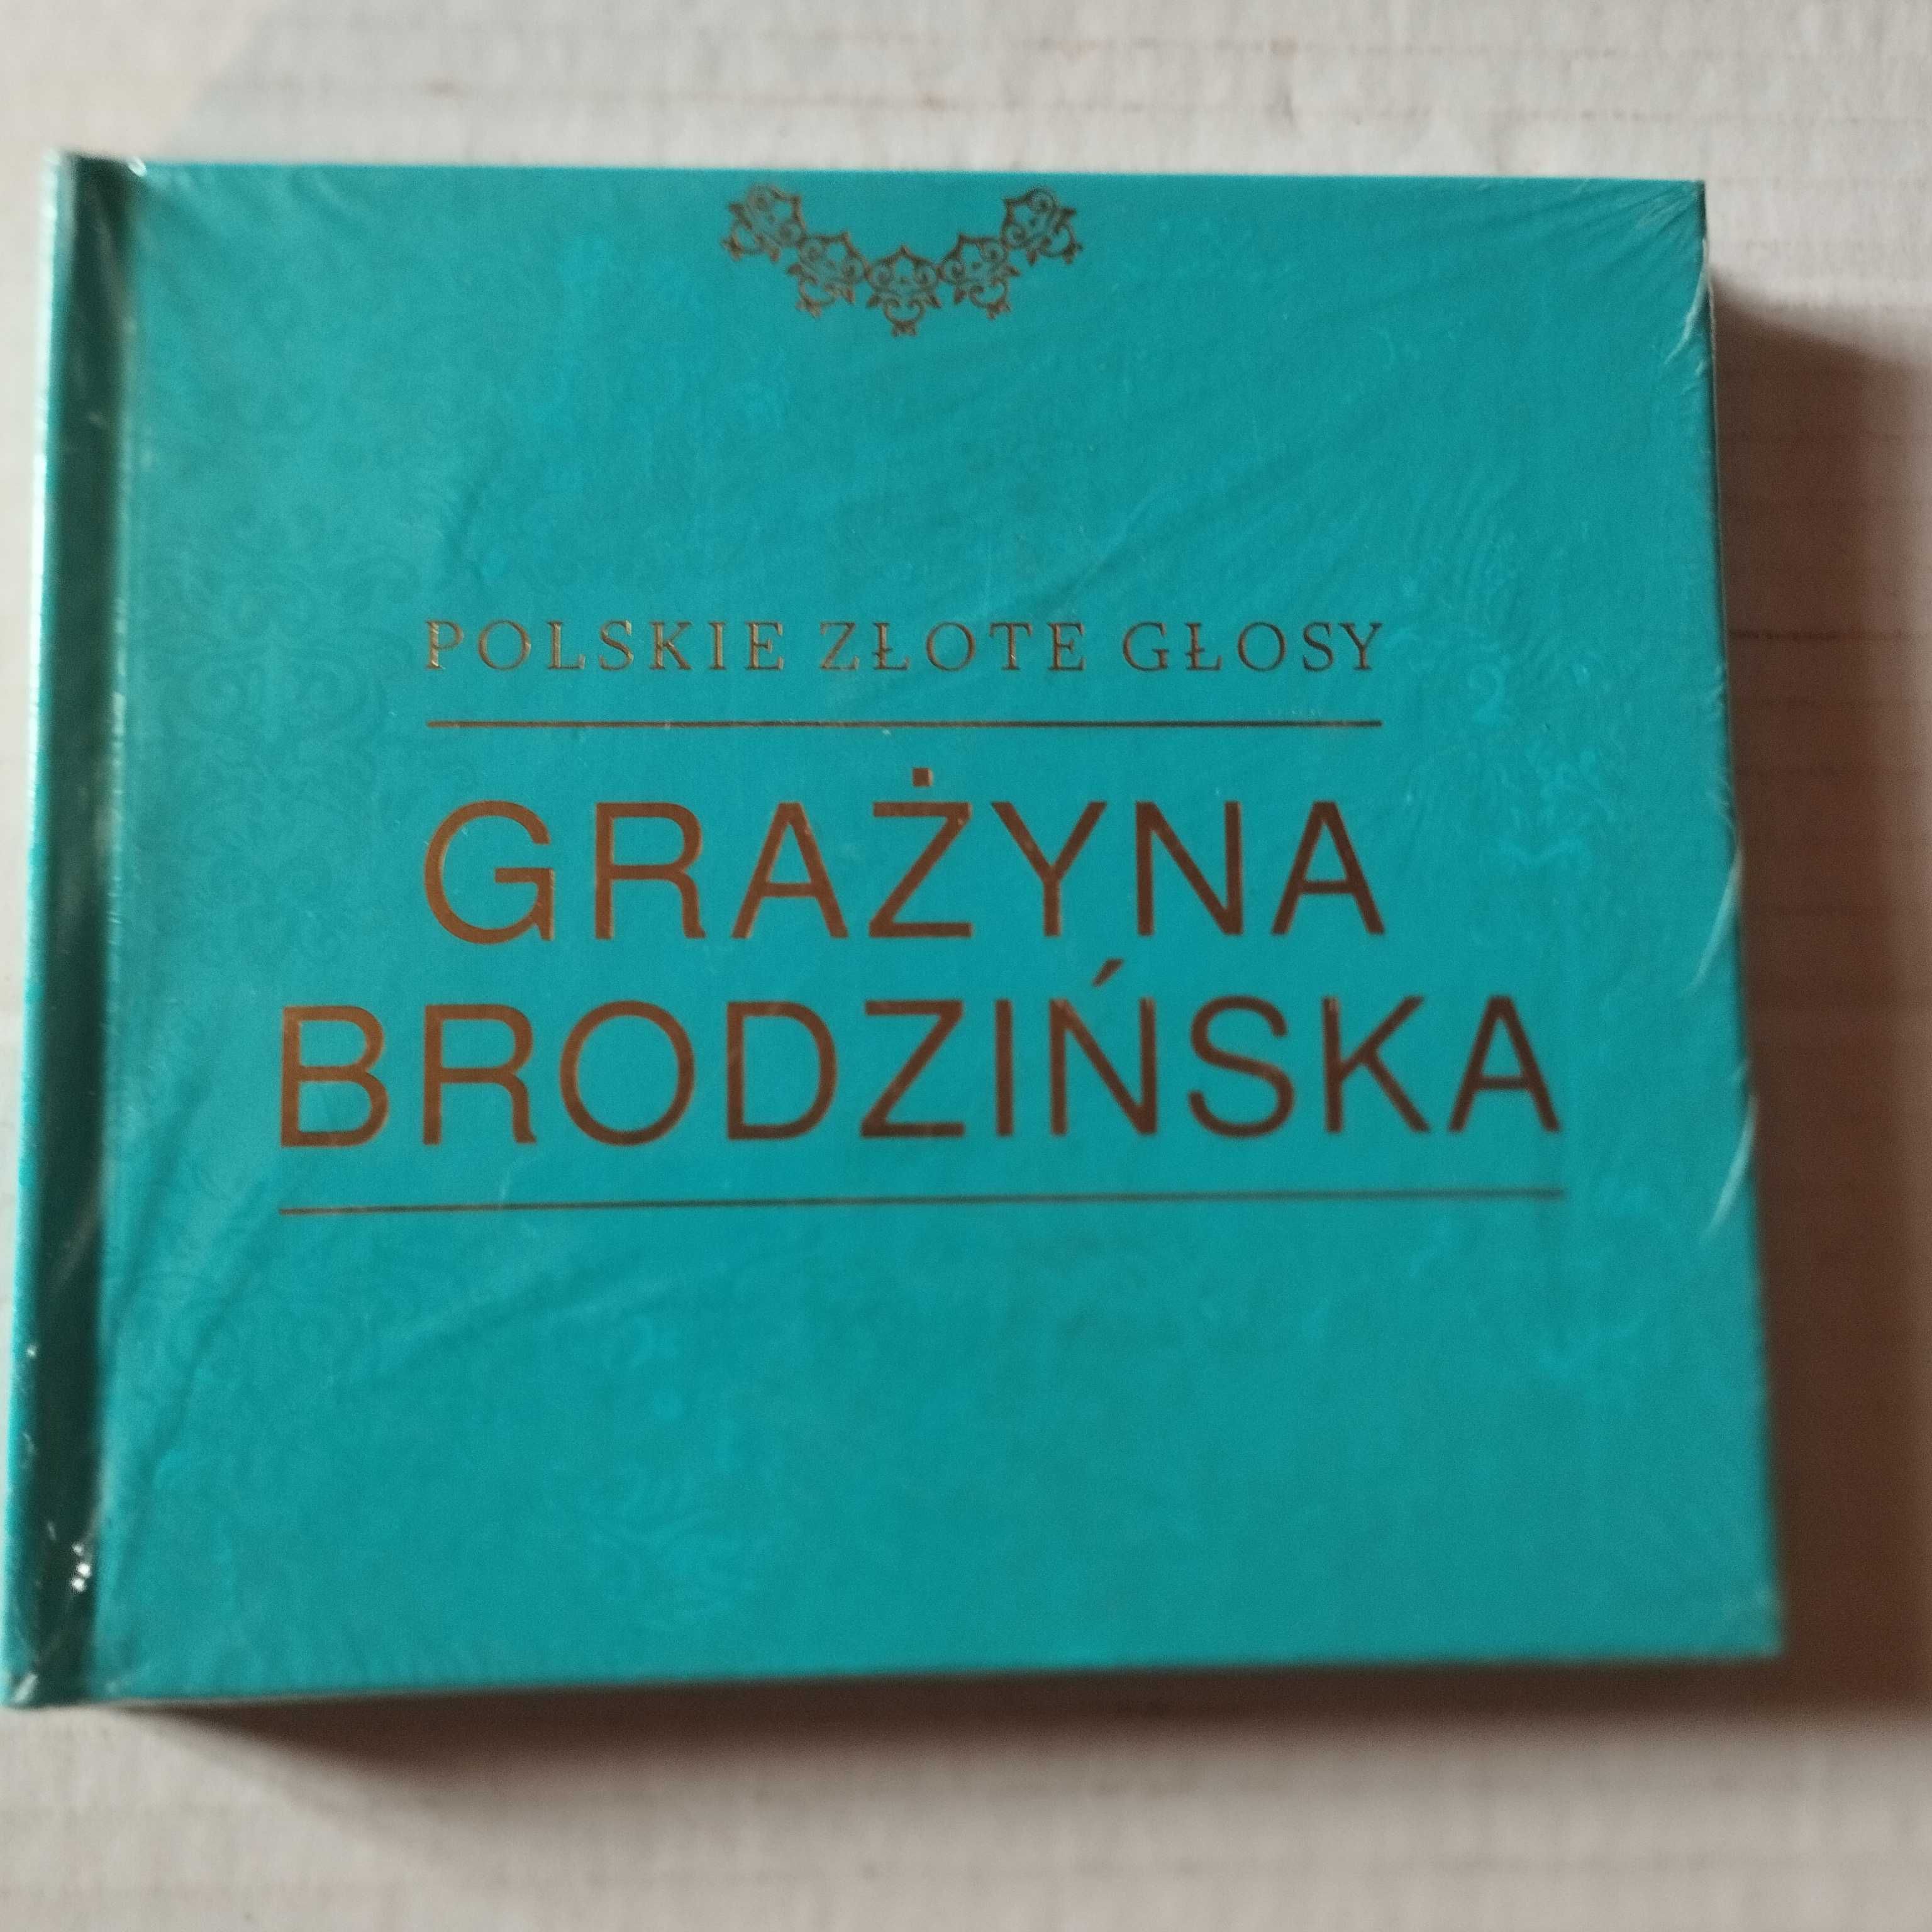 Polskie złote głosy - Grażyna Brodzińska - 3 CD.